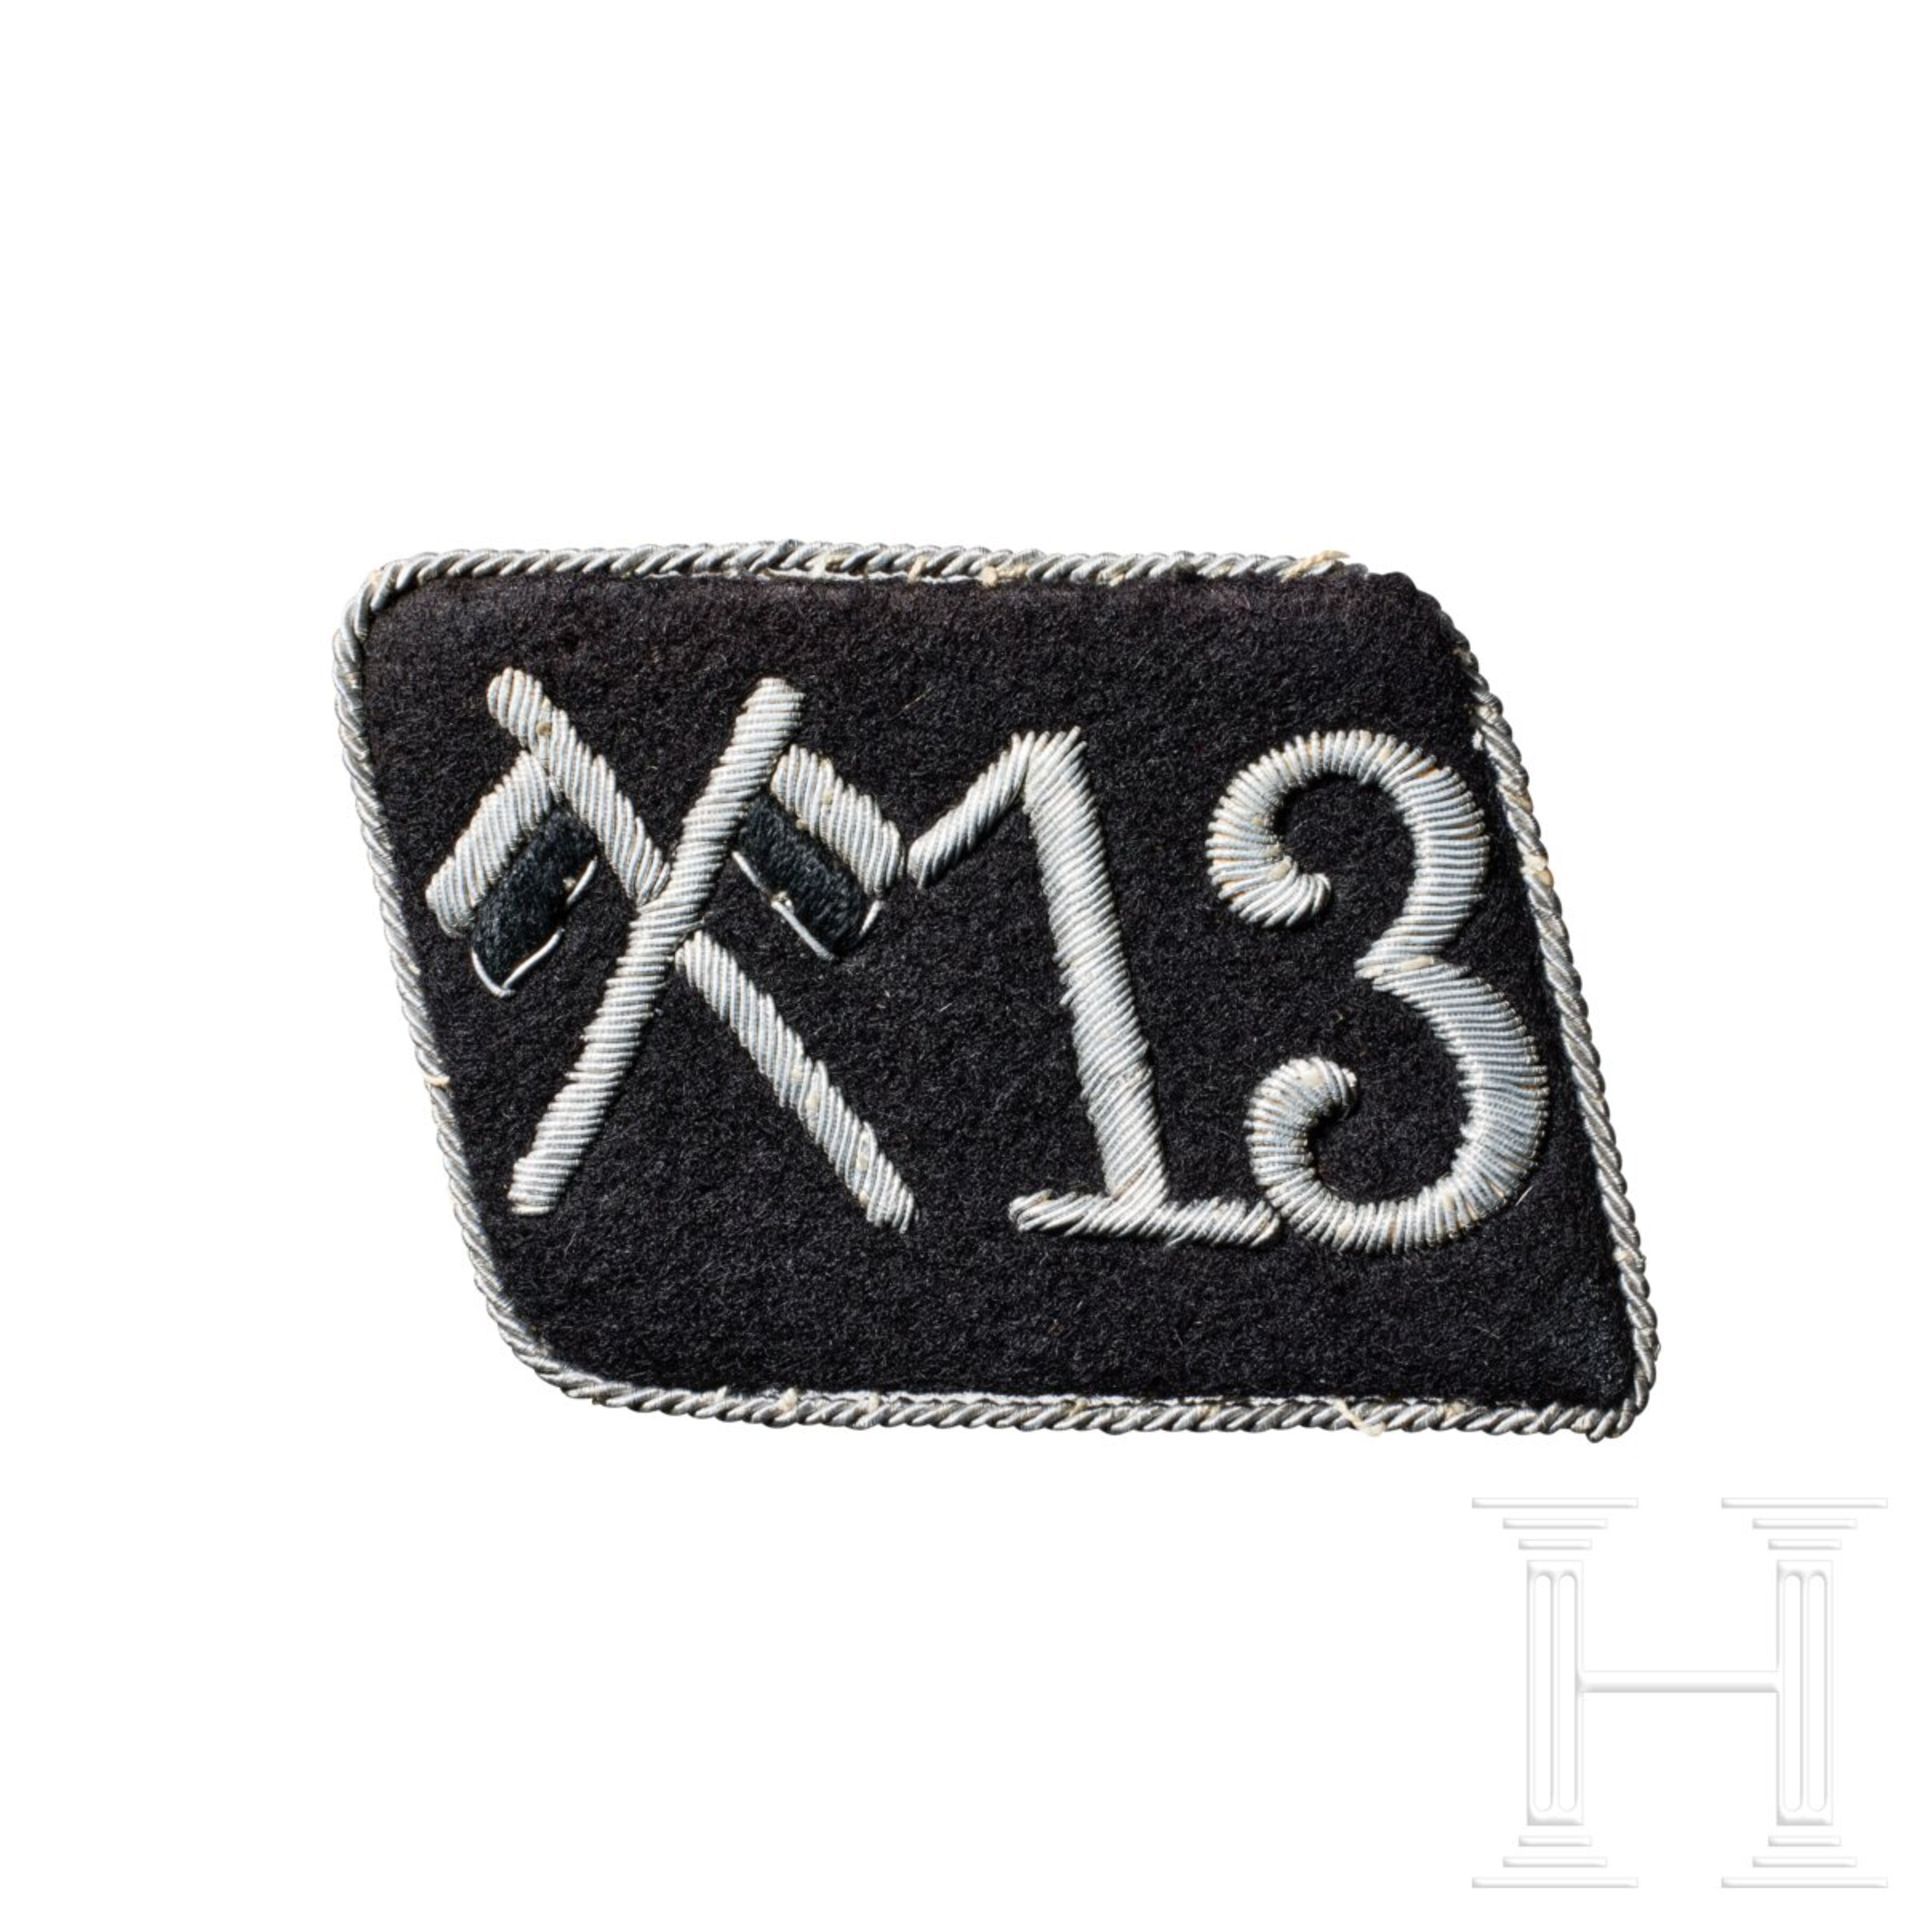 A Single Collar Tab for SS-Reiterstandarte 13 "Mannheim" Officer